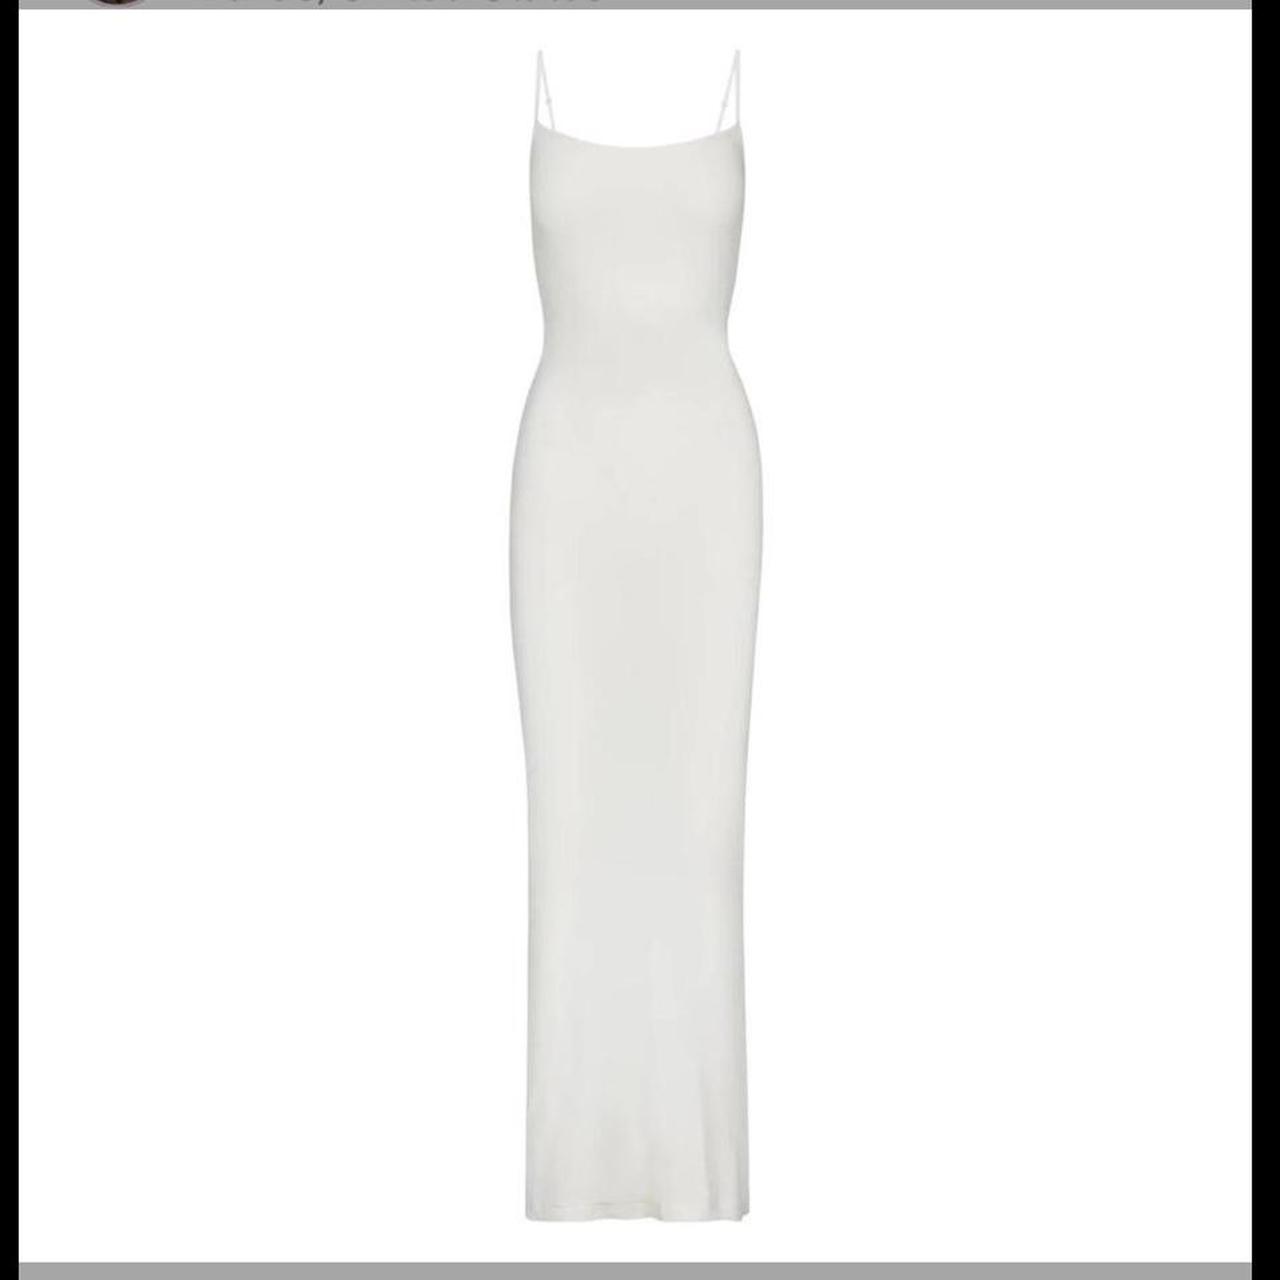 Skims Women's White Dress | Depop